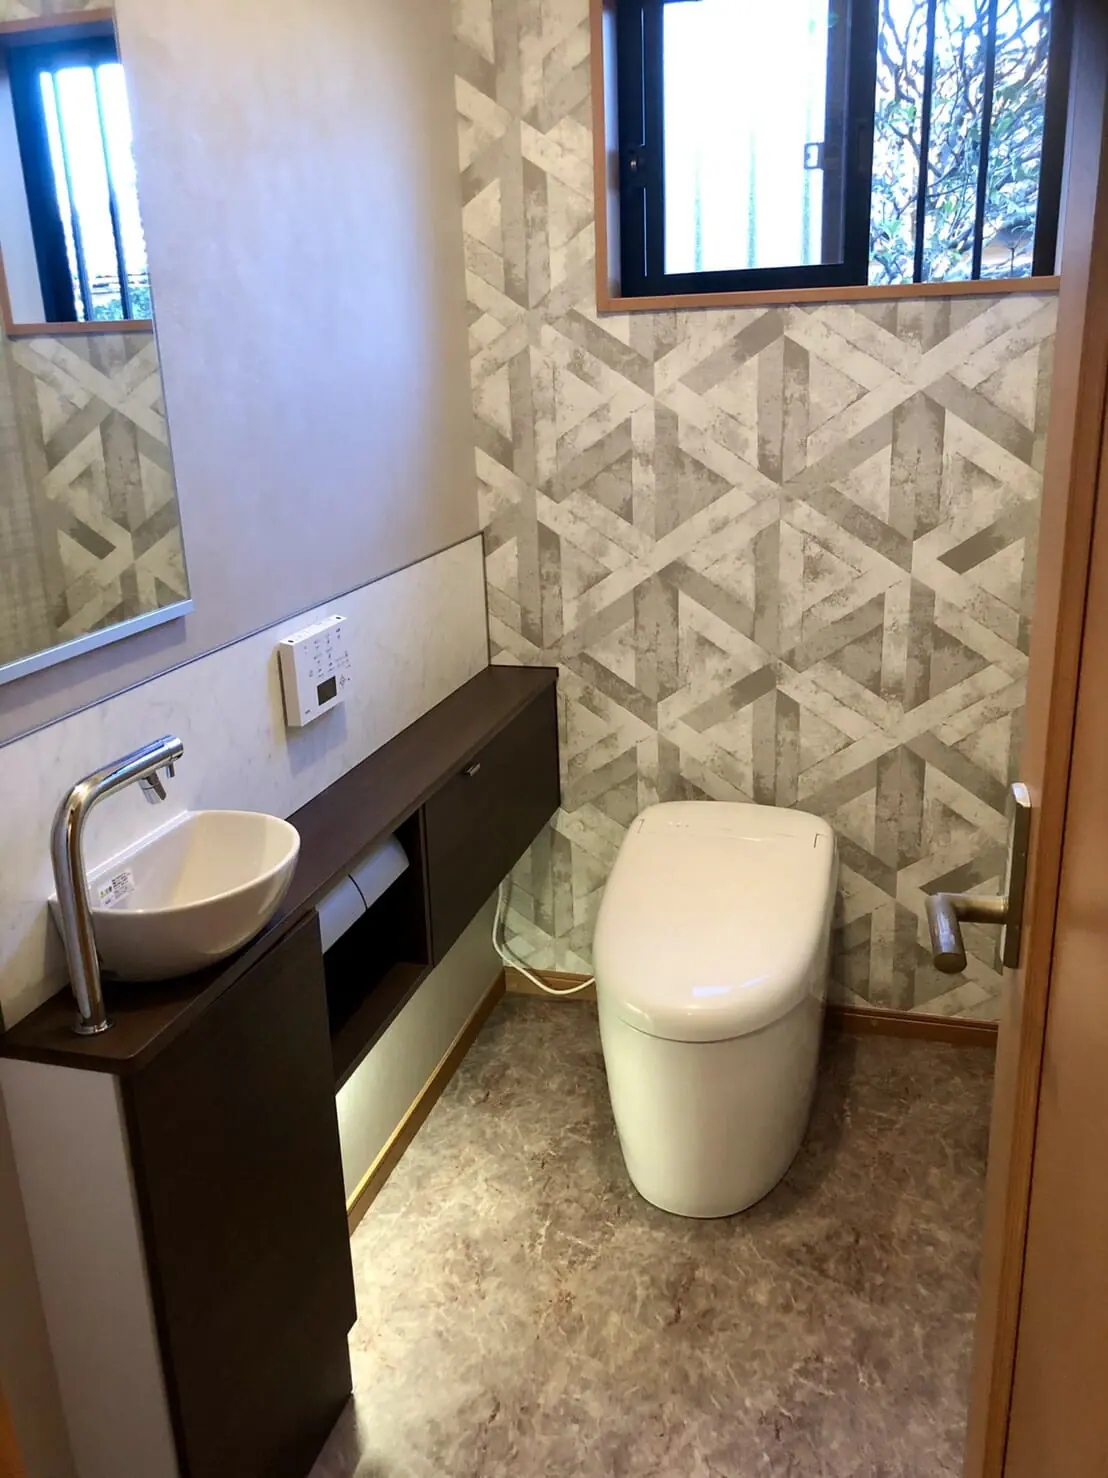 トイレ、手洗い器、内装にこだわって高級感と機能性を兼ね備えたトイレ空間に